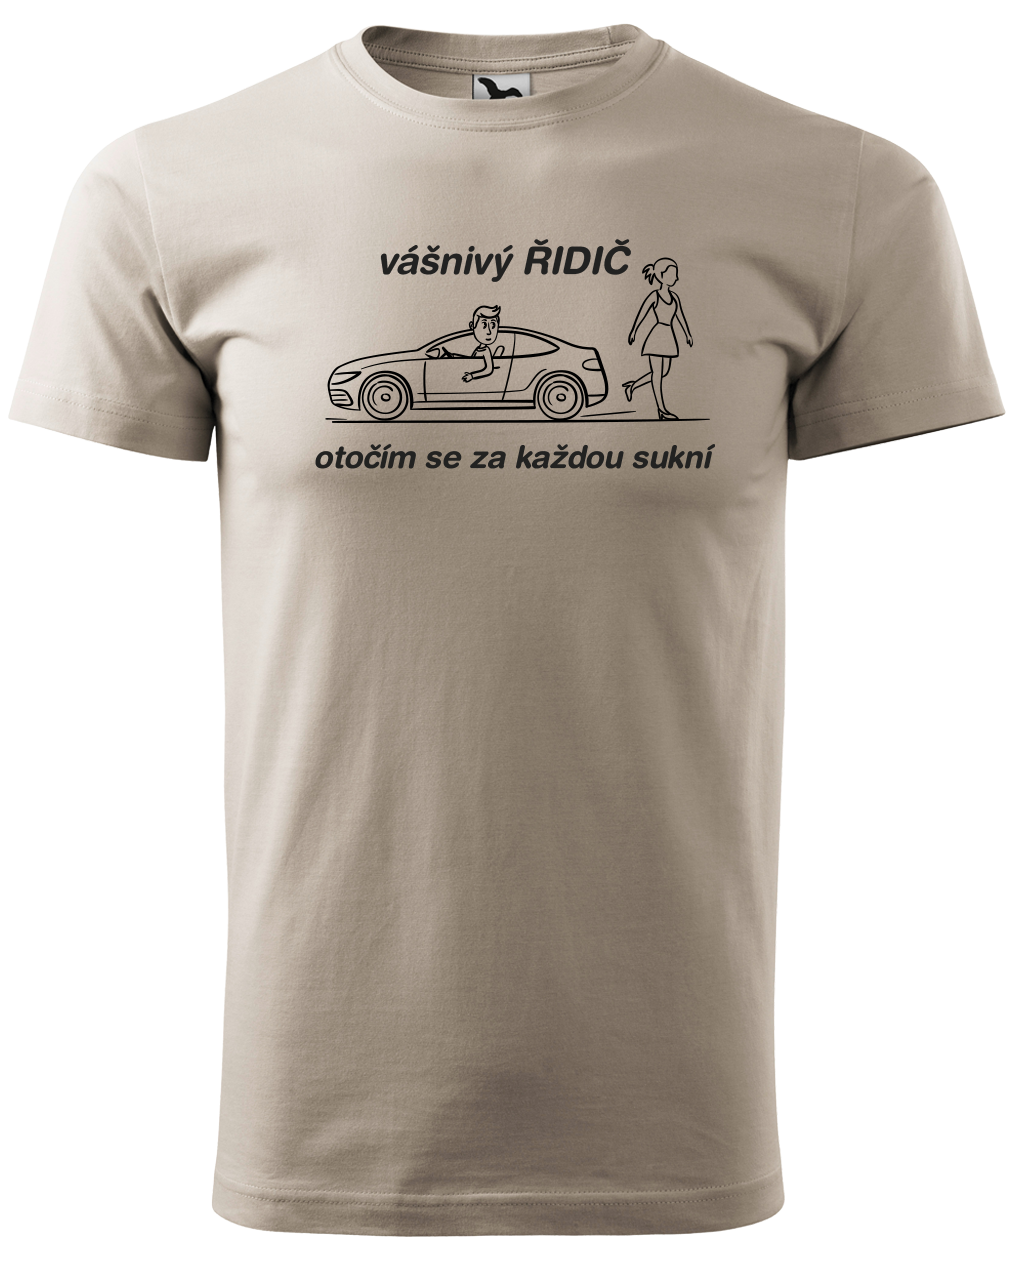 Vtipné tričko pro řidiče - Vášnivý řidič Velikost: M, Barva: Ledově šedá (51)